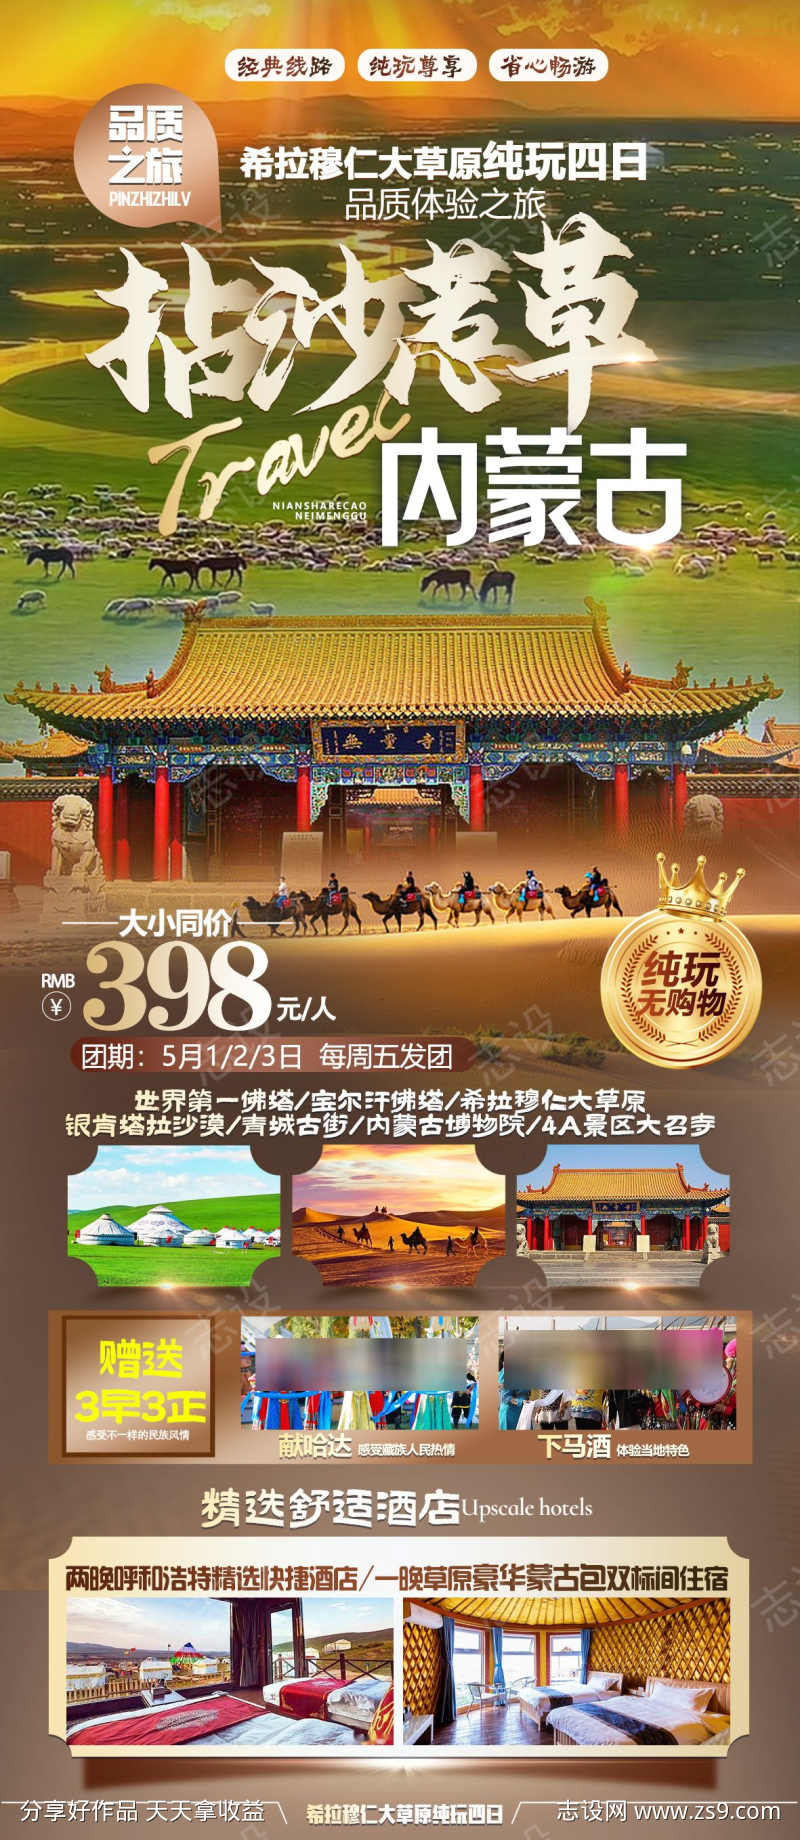 内蒙古旅游海报